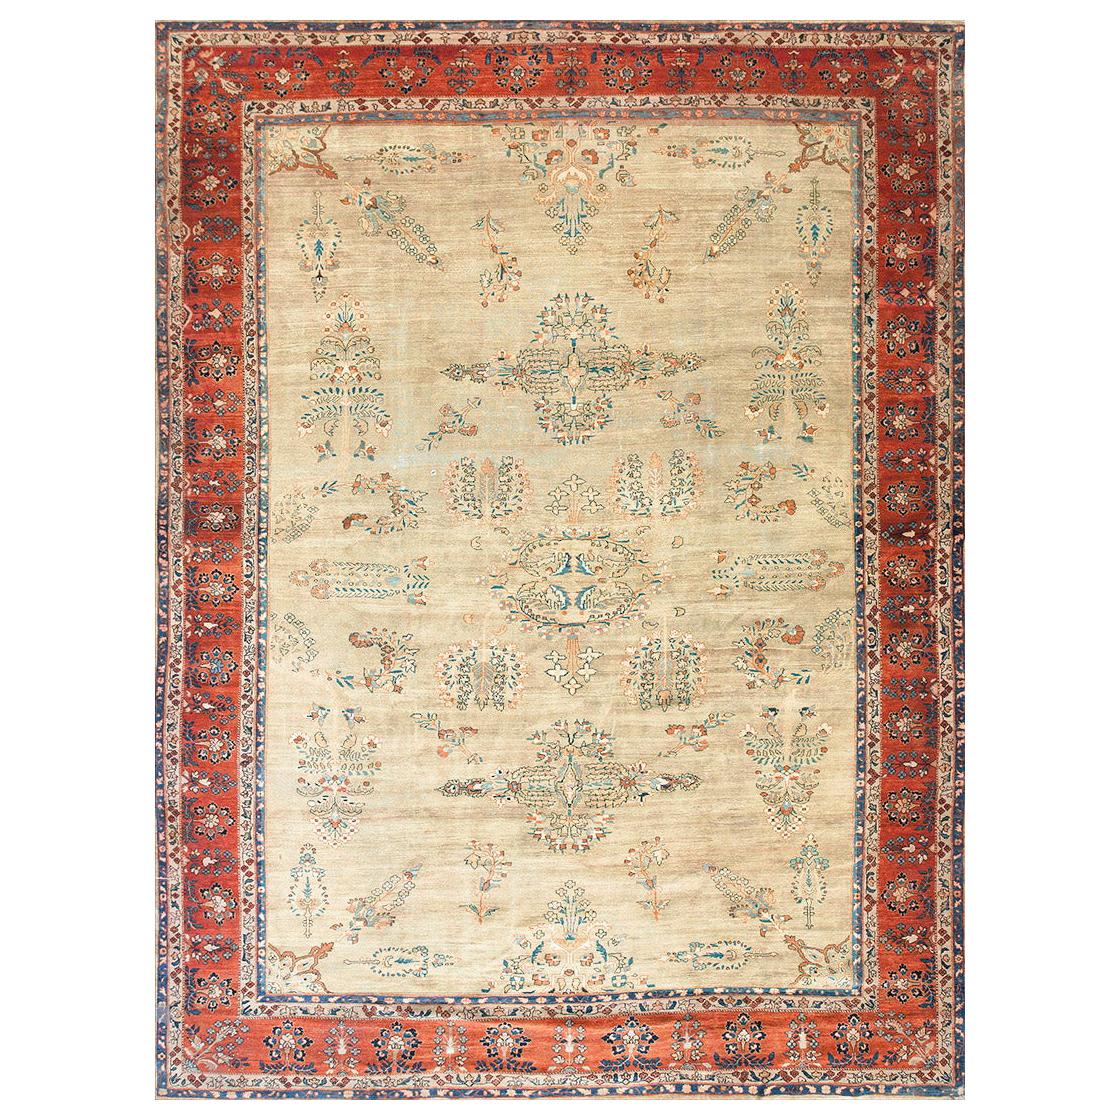 Persischer Farahan-Teppich des späten 19. Jahrhunderts ( 10' x 13'4" - 305 x 405")